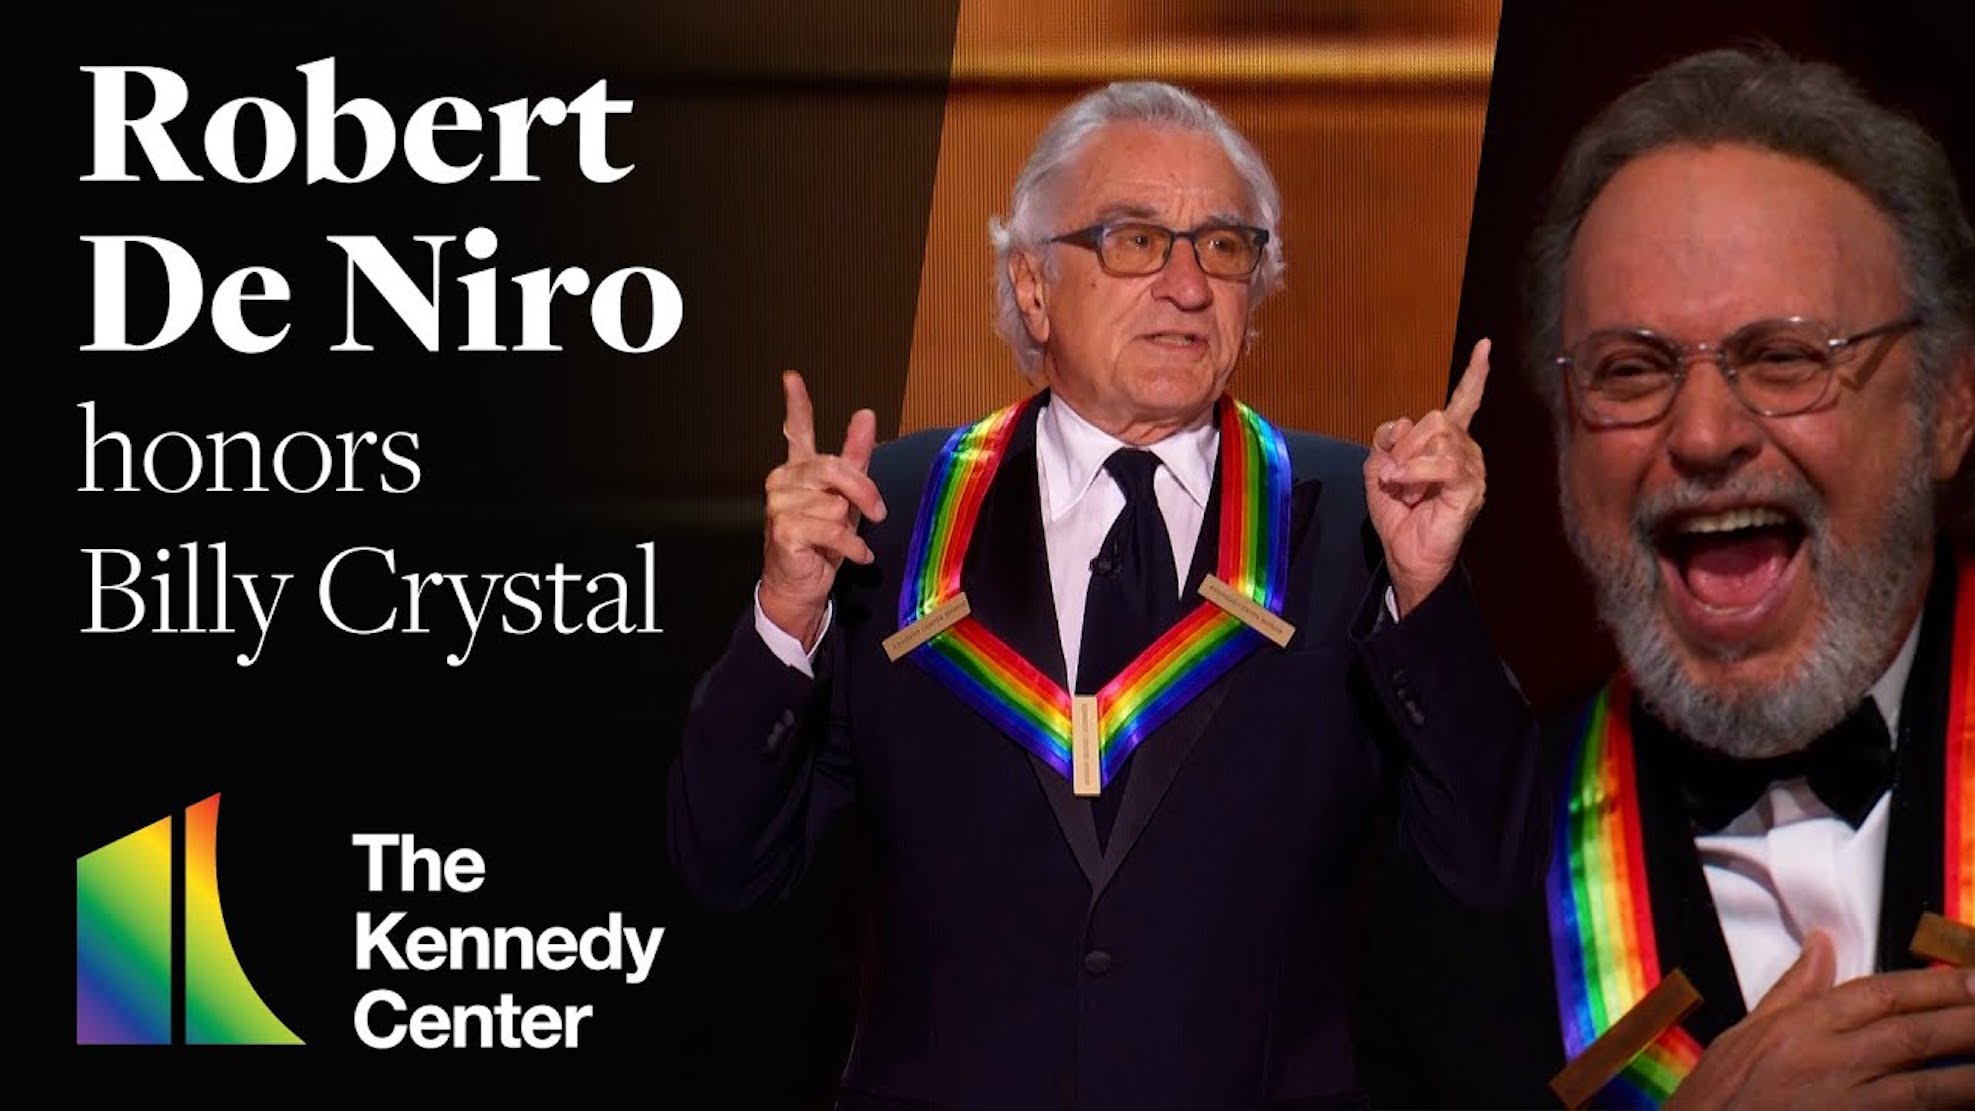 Η 46η τελετή των Kennedy Center Honors και η επική ατάκα του Ντε Νίρο για τη νέα υποψηφιότητα Μπάιντεν